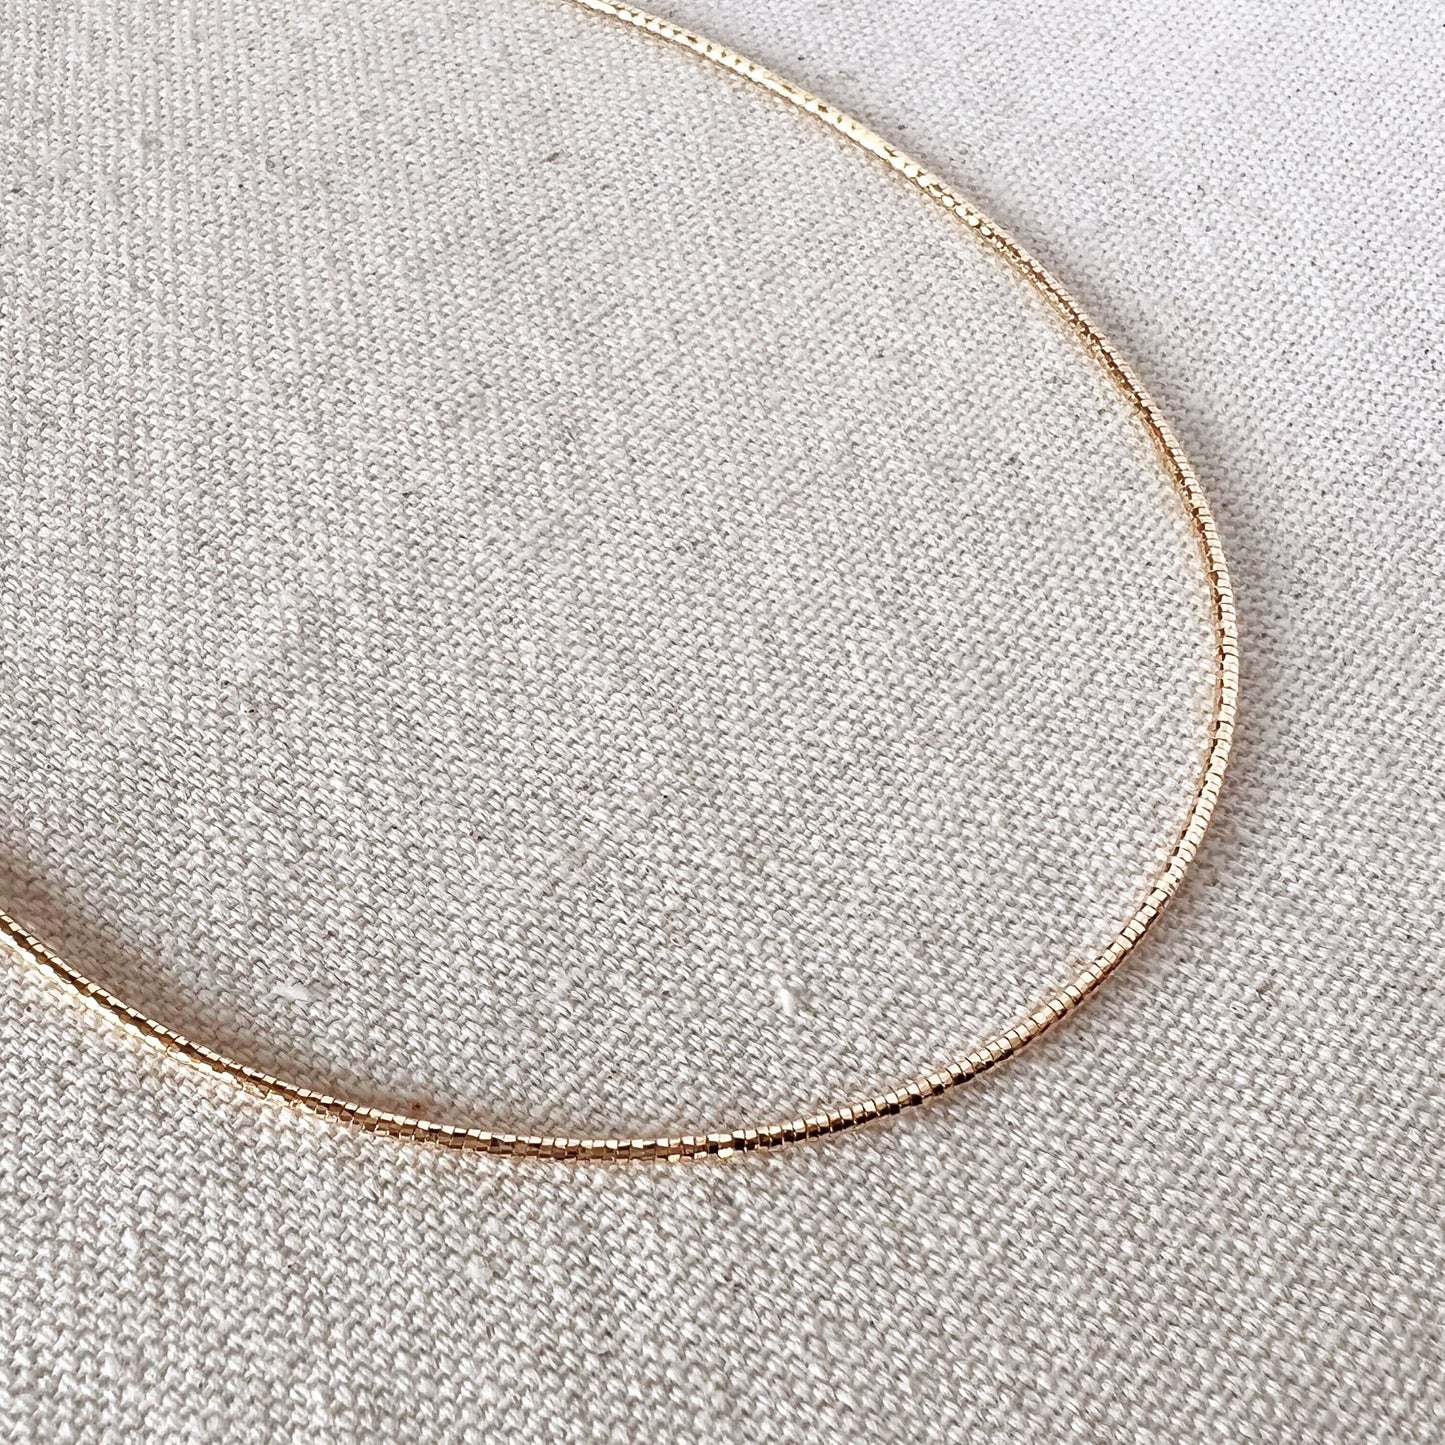 GoldFi 18k Gold Filled Omega Necklace